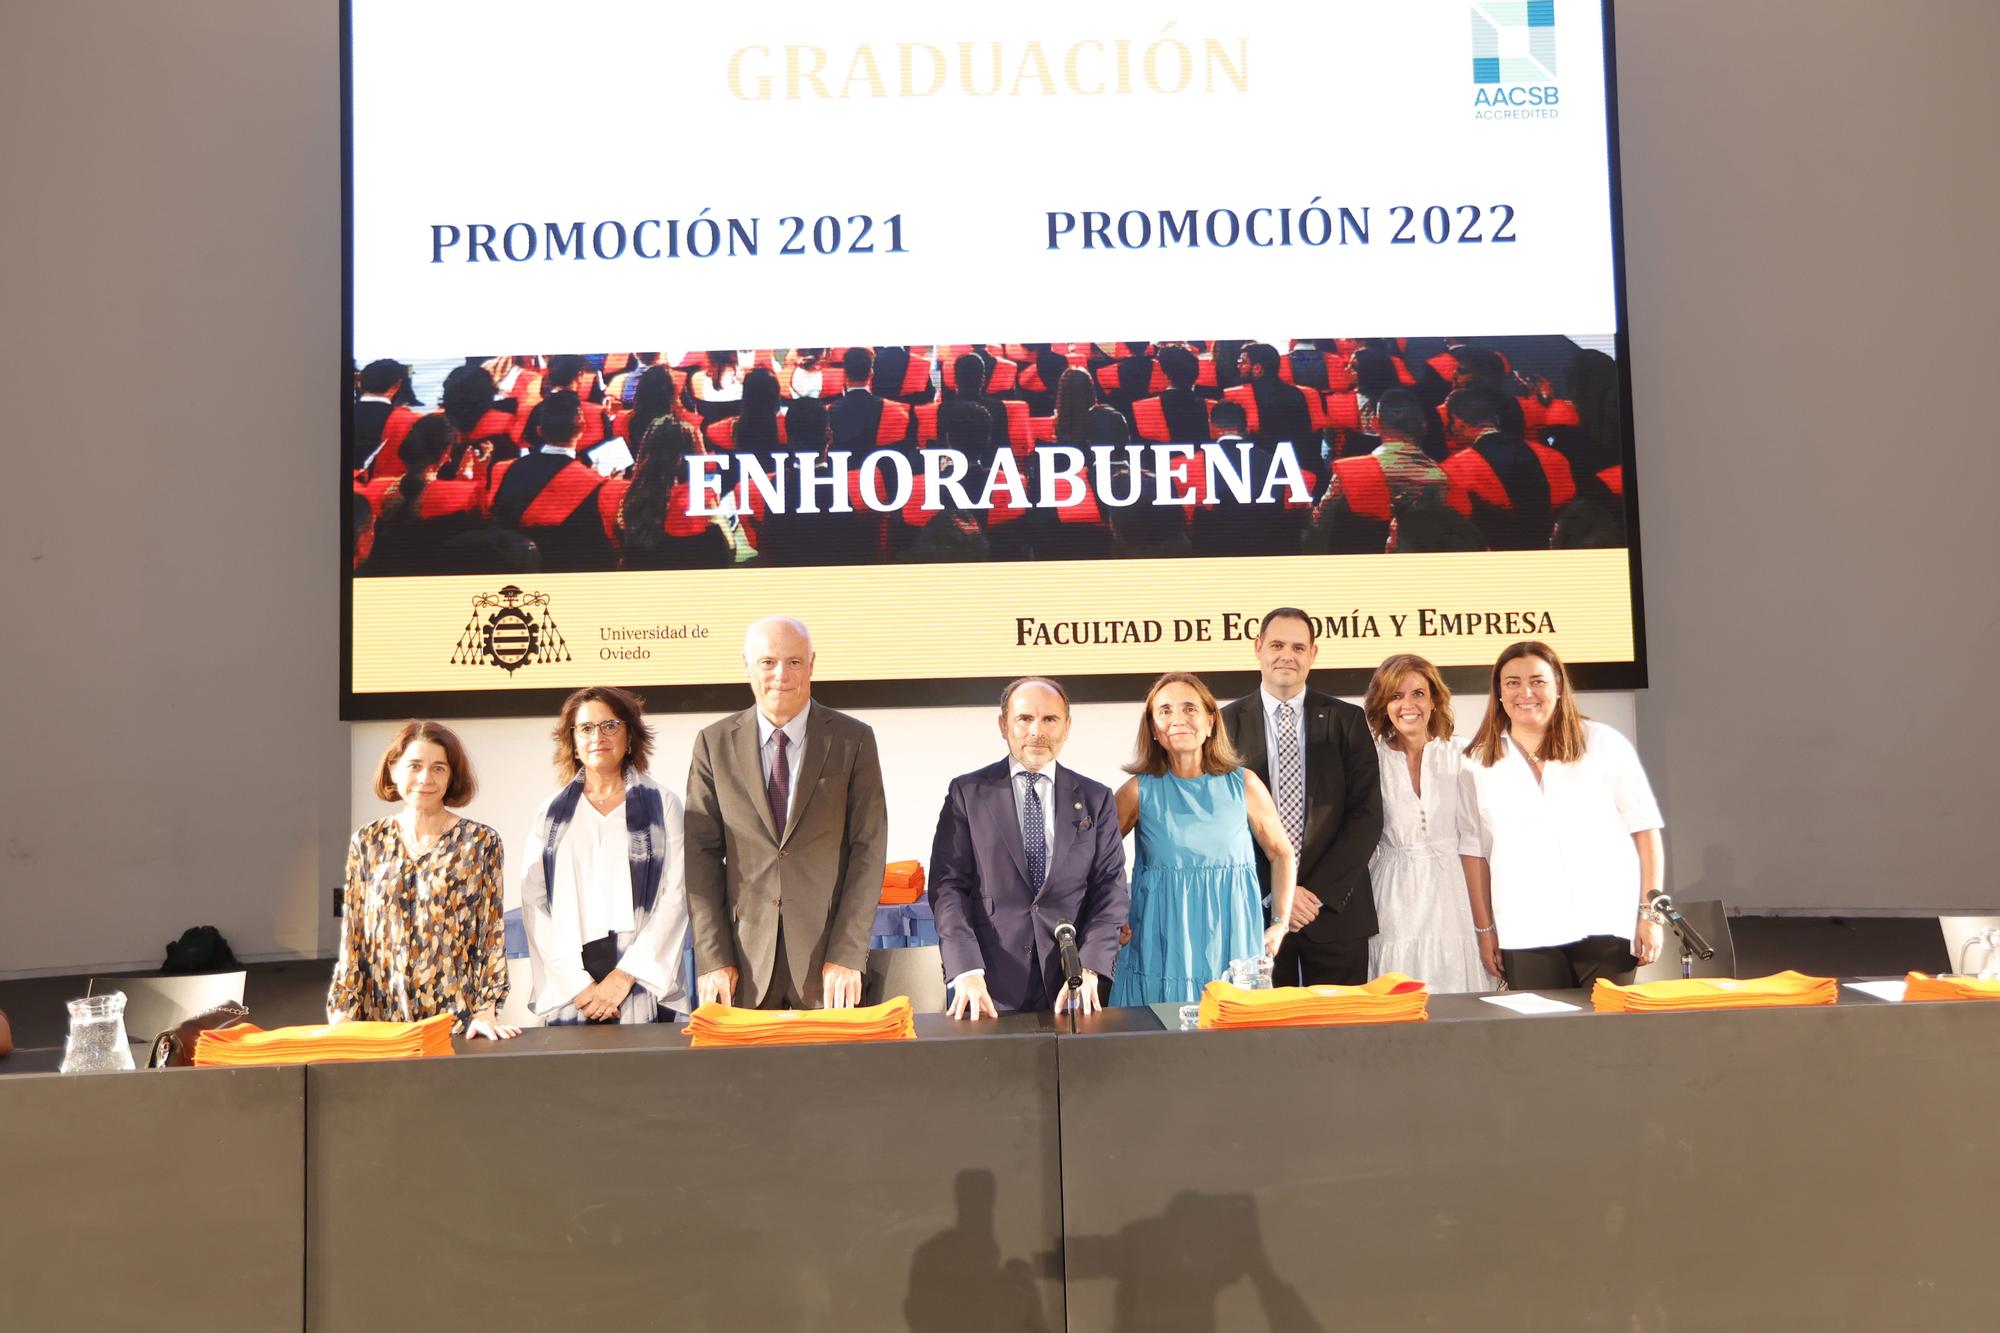 En imágenes: Así fue la graduación de Económicas a la que asistió José Manuel Campa, presidente de Autoridad Bancaria Europea